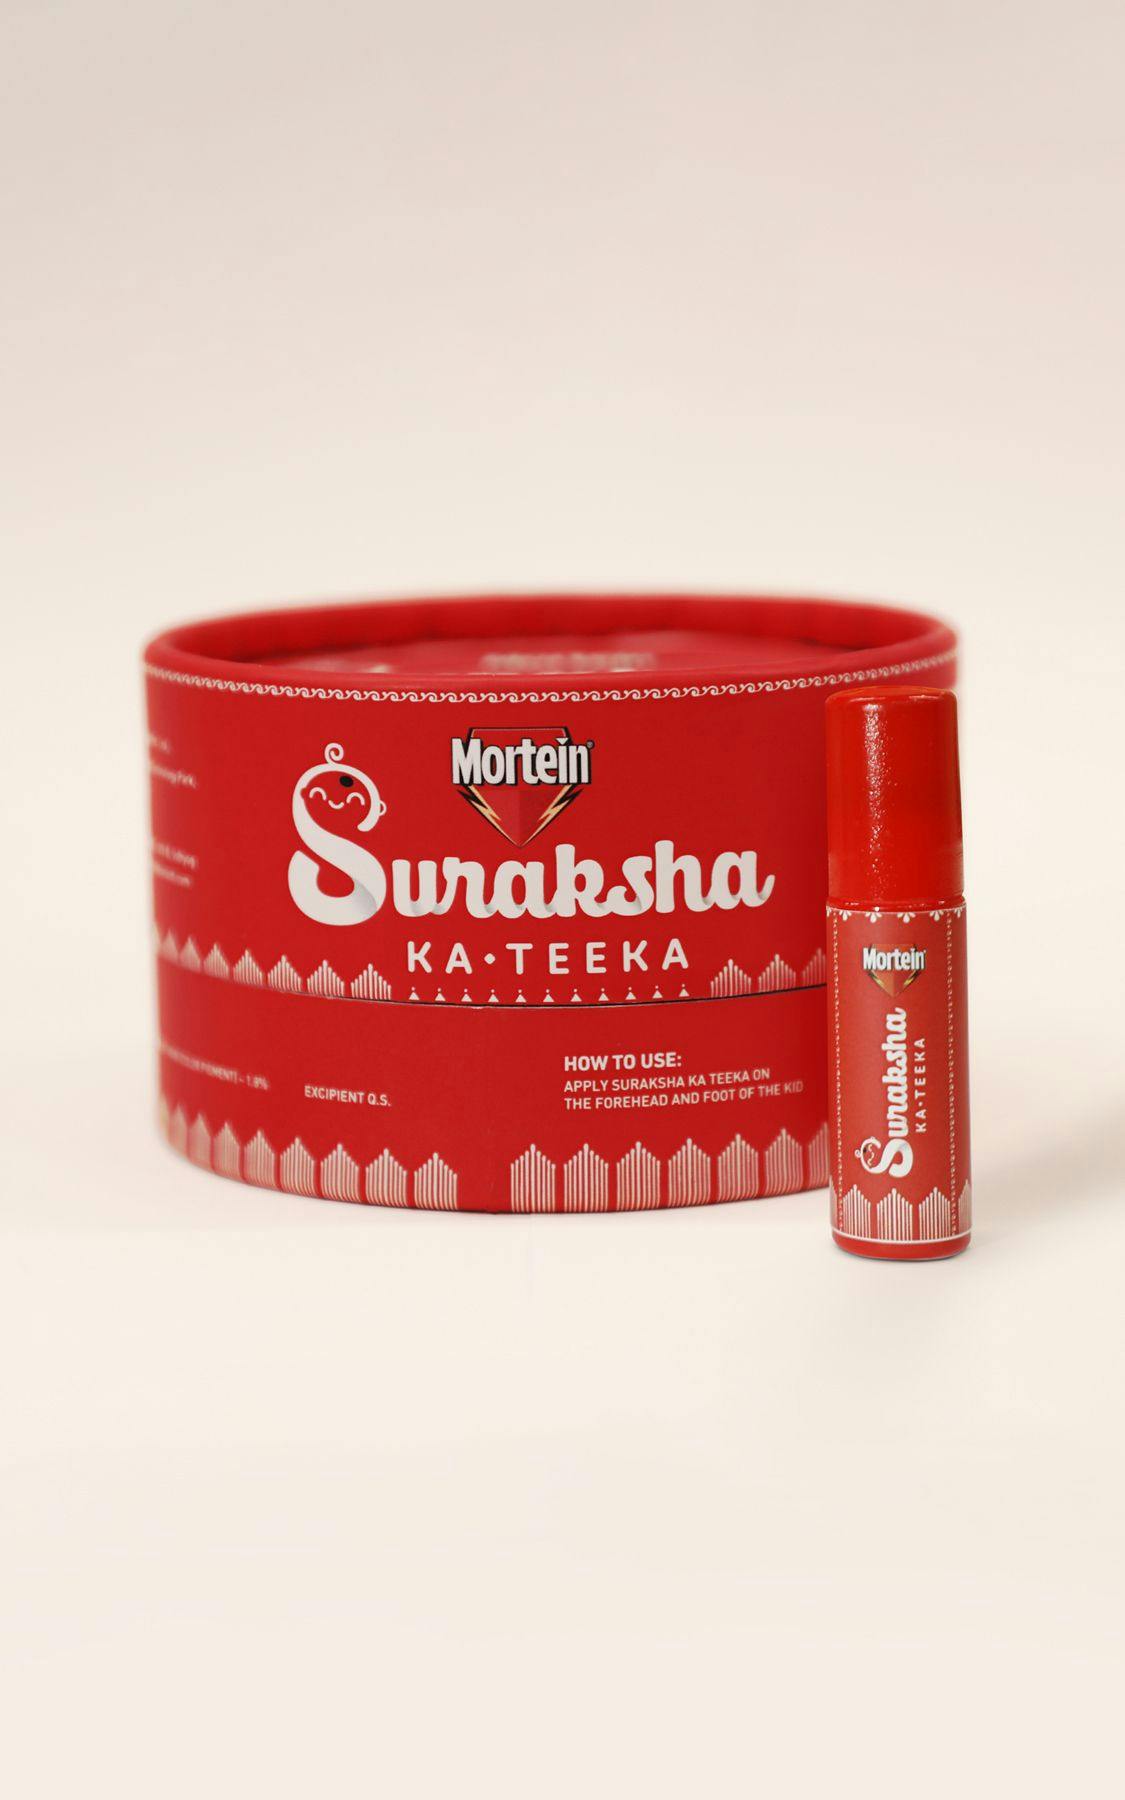 Mortein, Suraksha Ka Teeka, product packaging